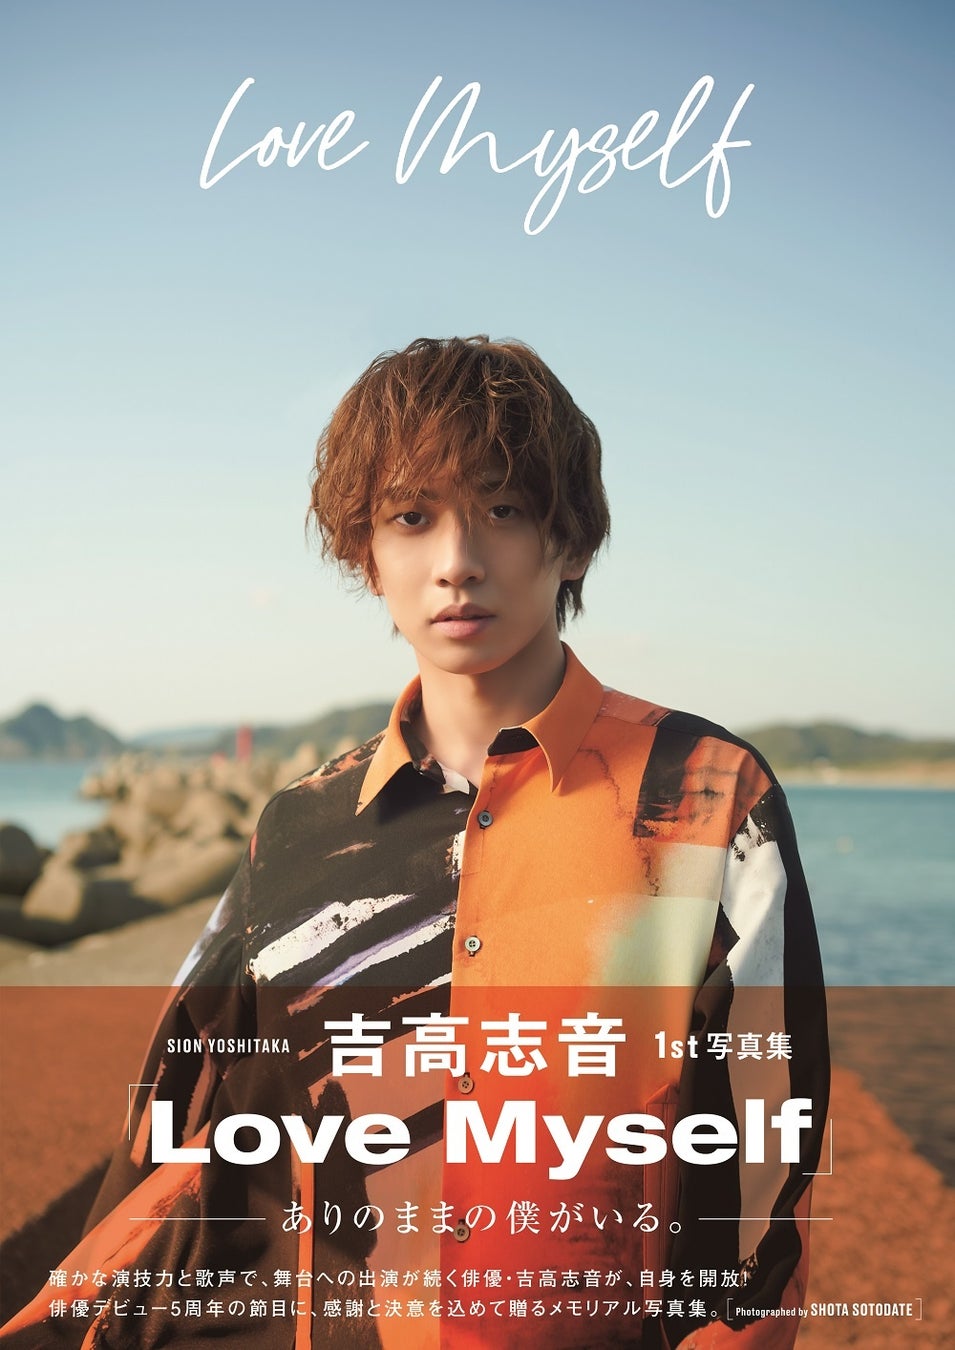 吉高志音1st写真集「Love Myself」(東京ニュース通信社刊)